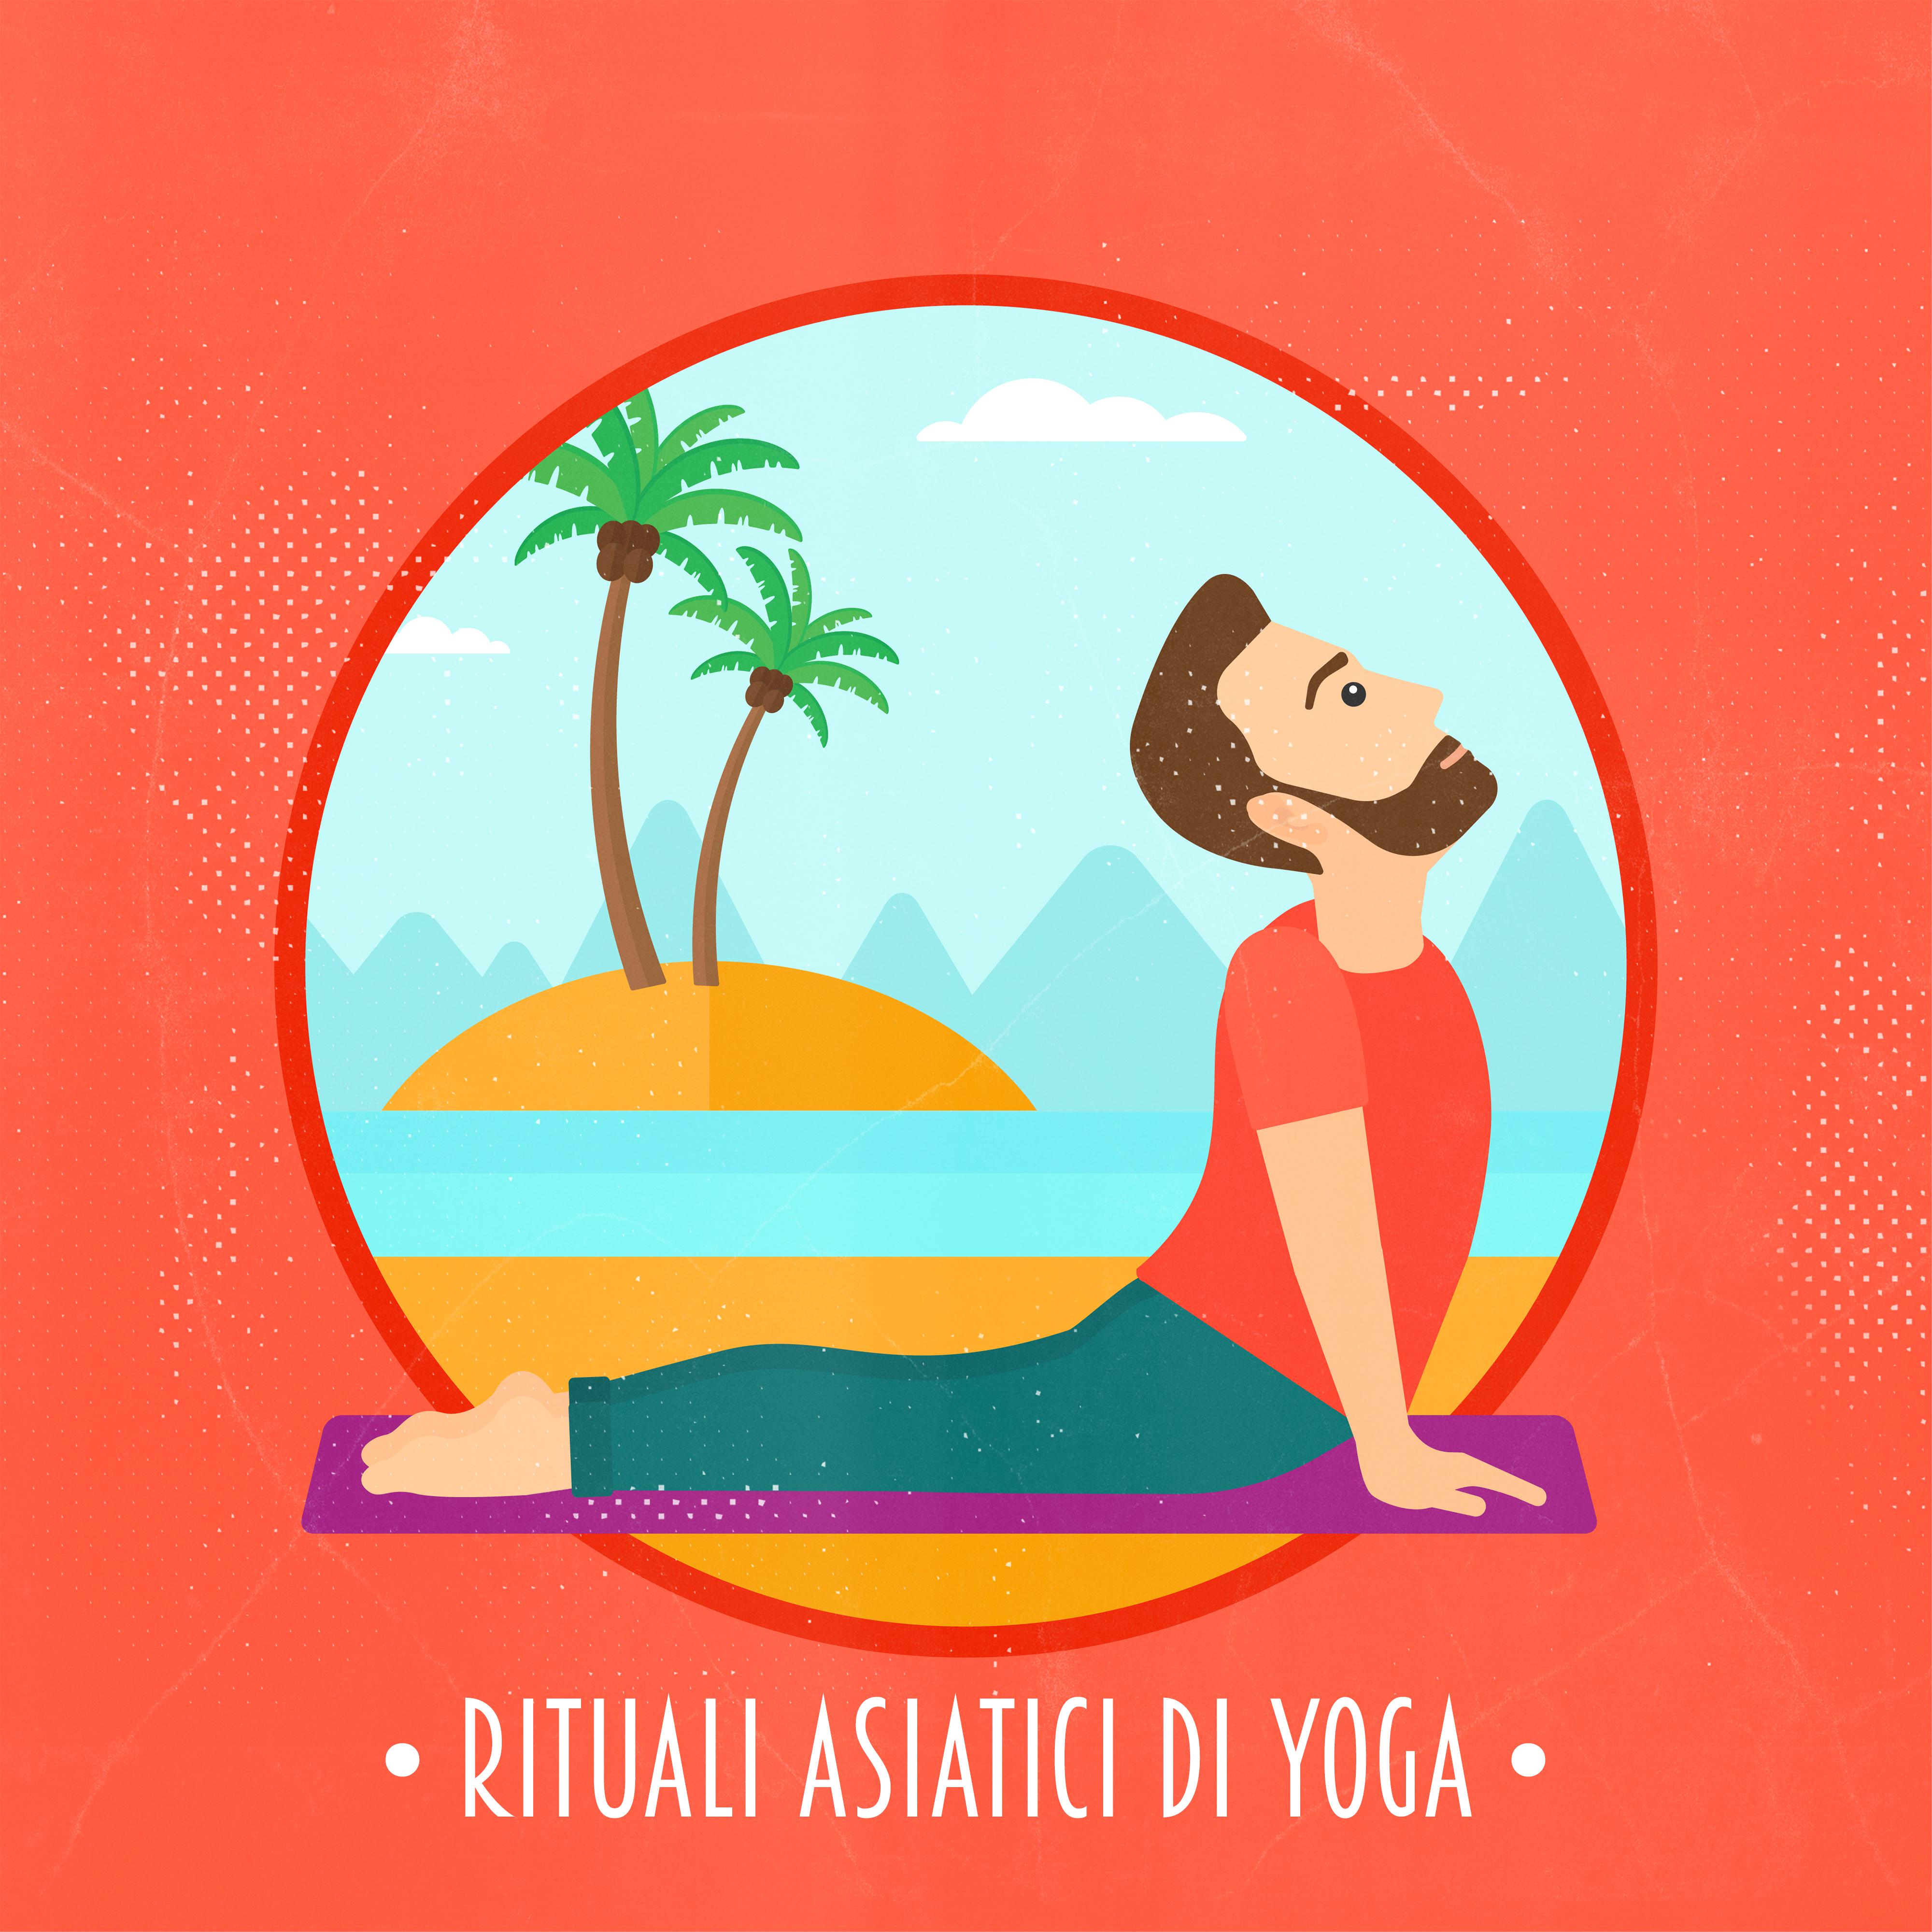 Rituali Asiatici di Yoga - 2019 Musica per Meditazione e Relax